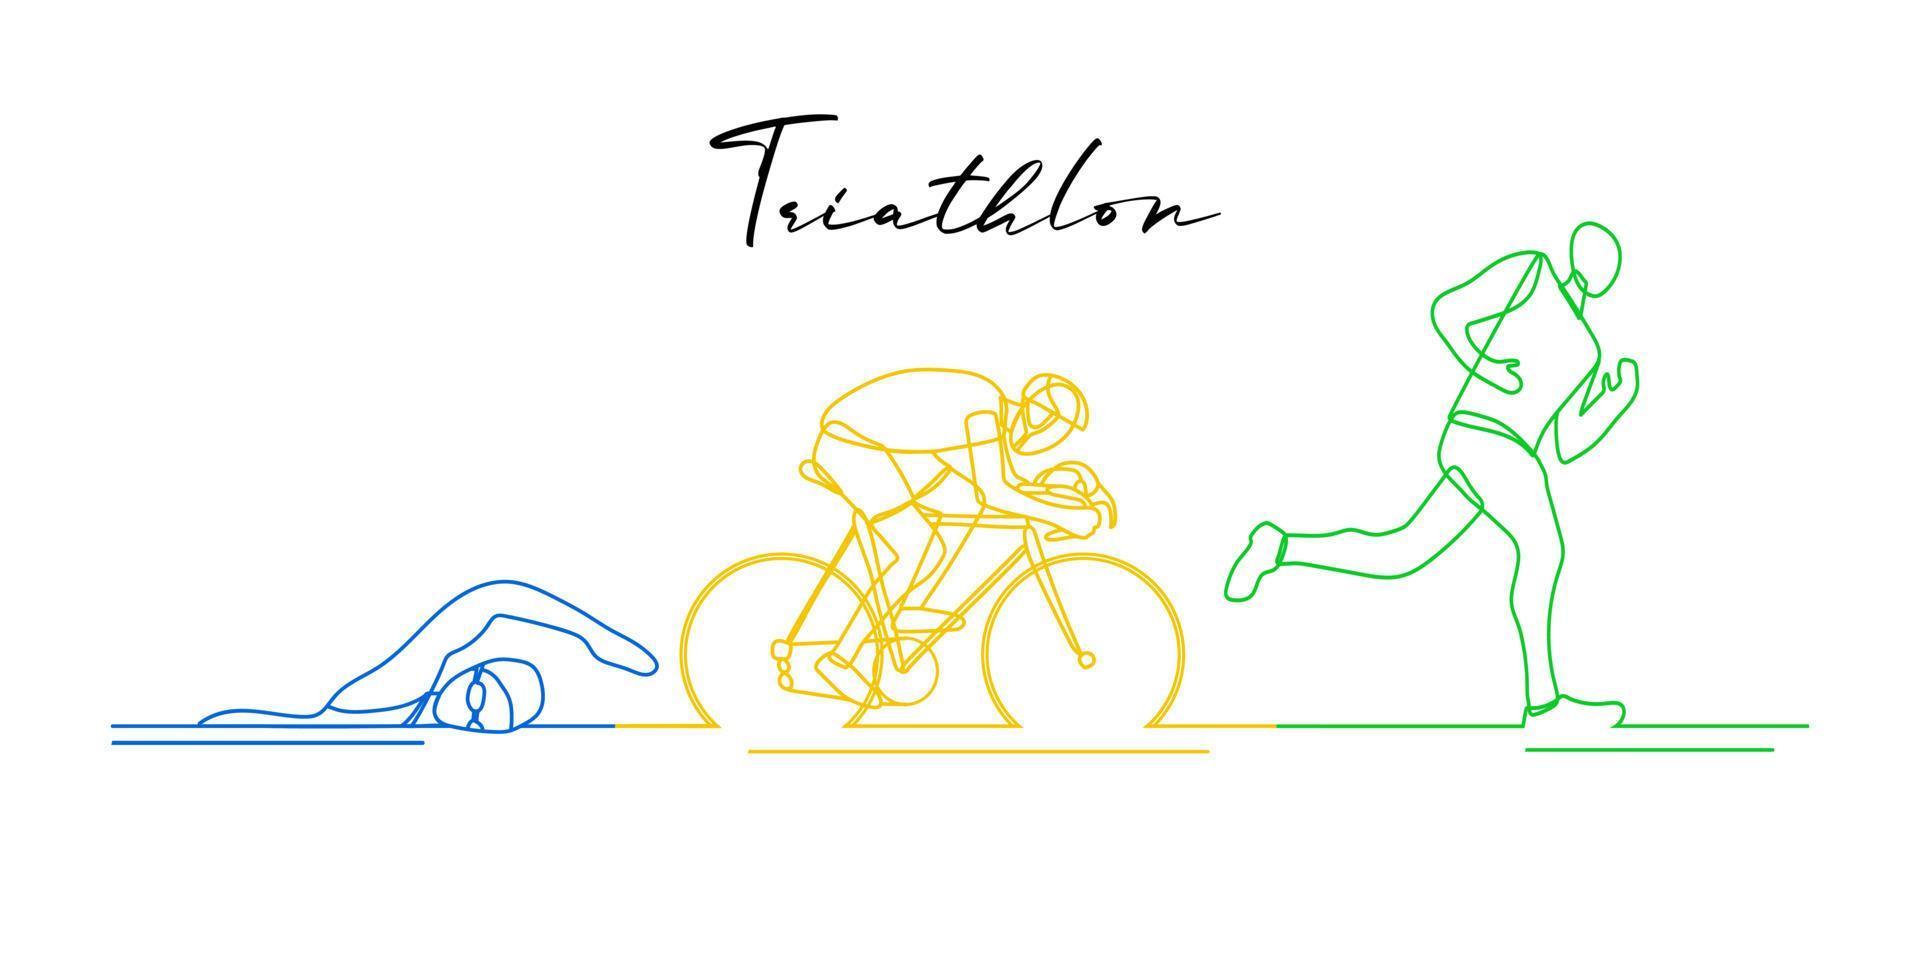 Triathlon. atleti disegnati a mano lineari. gare di nuoto, ciclismo e corsa vettore